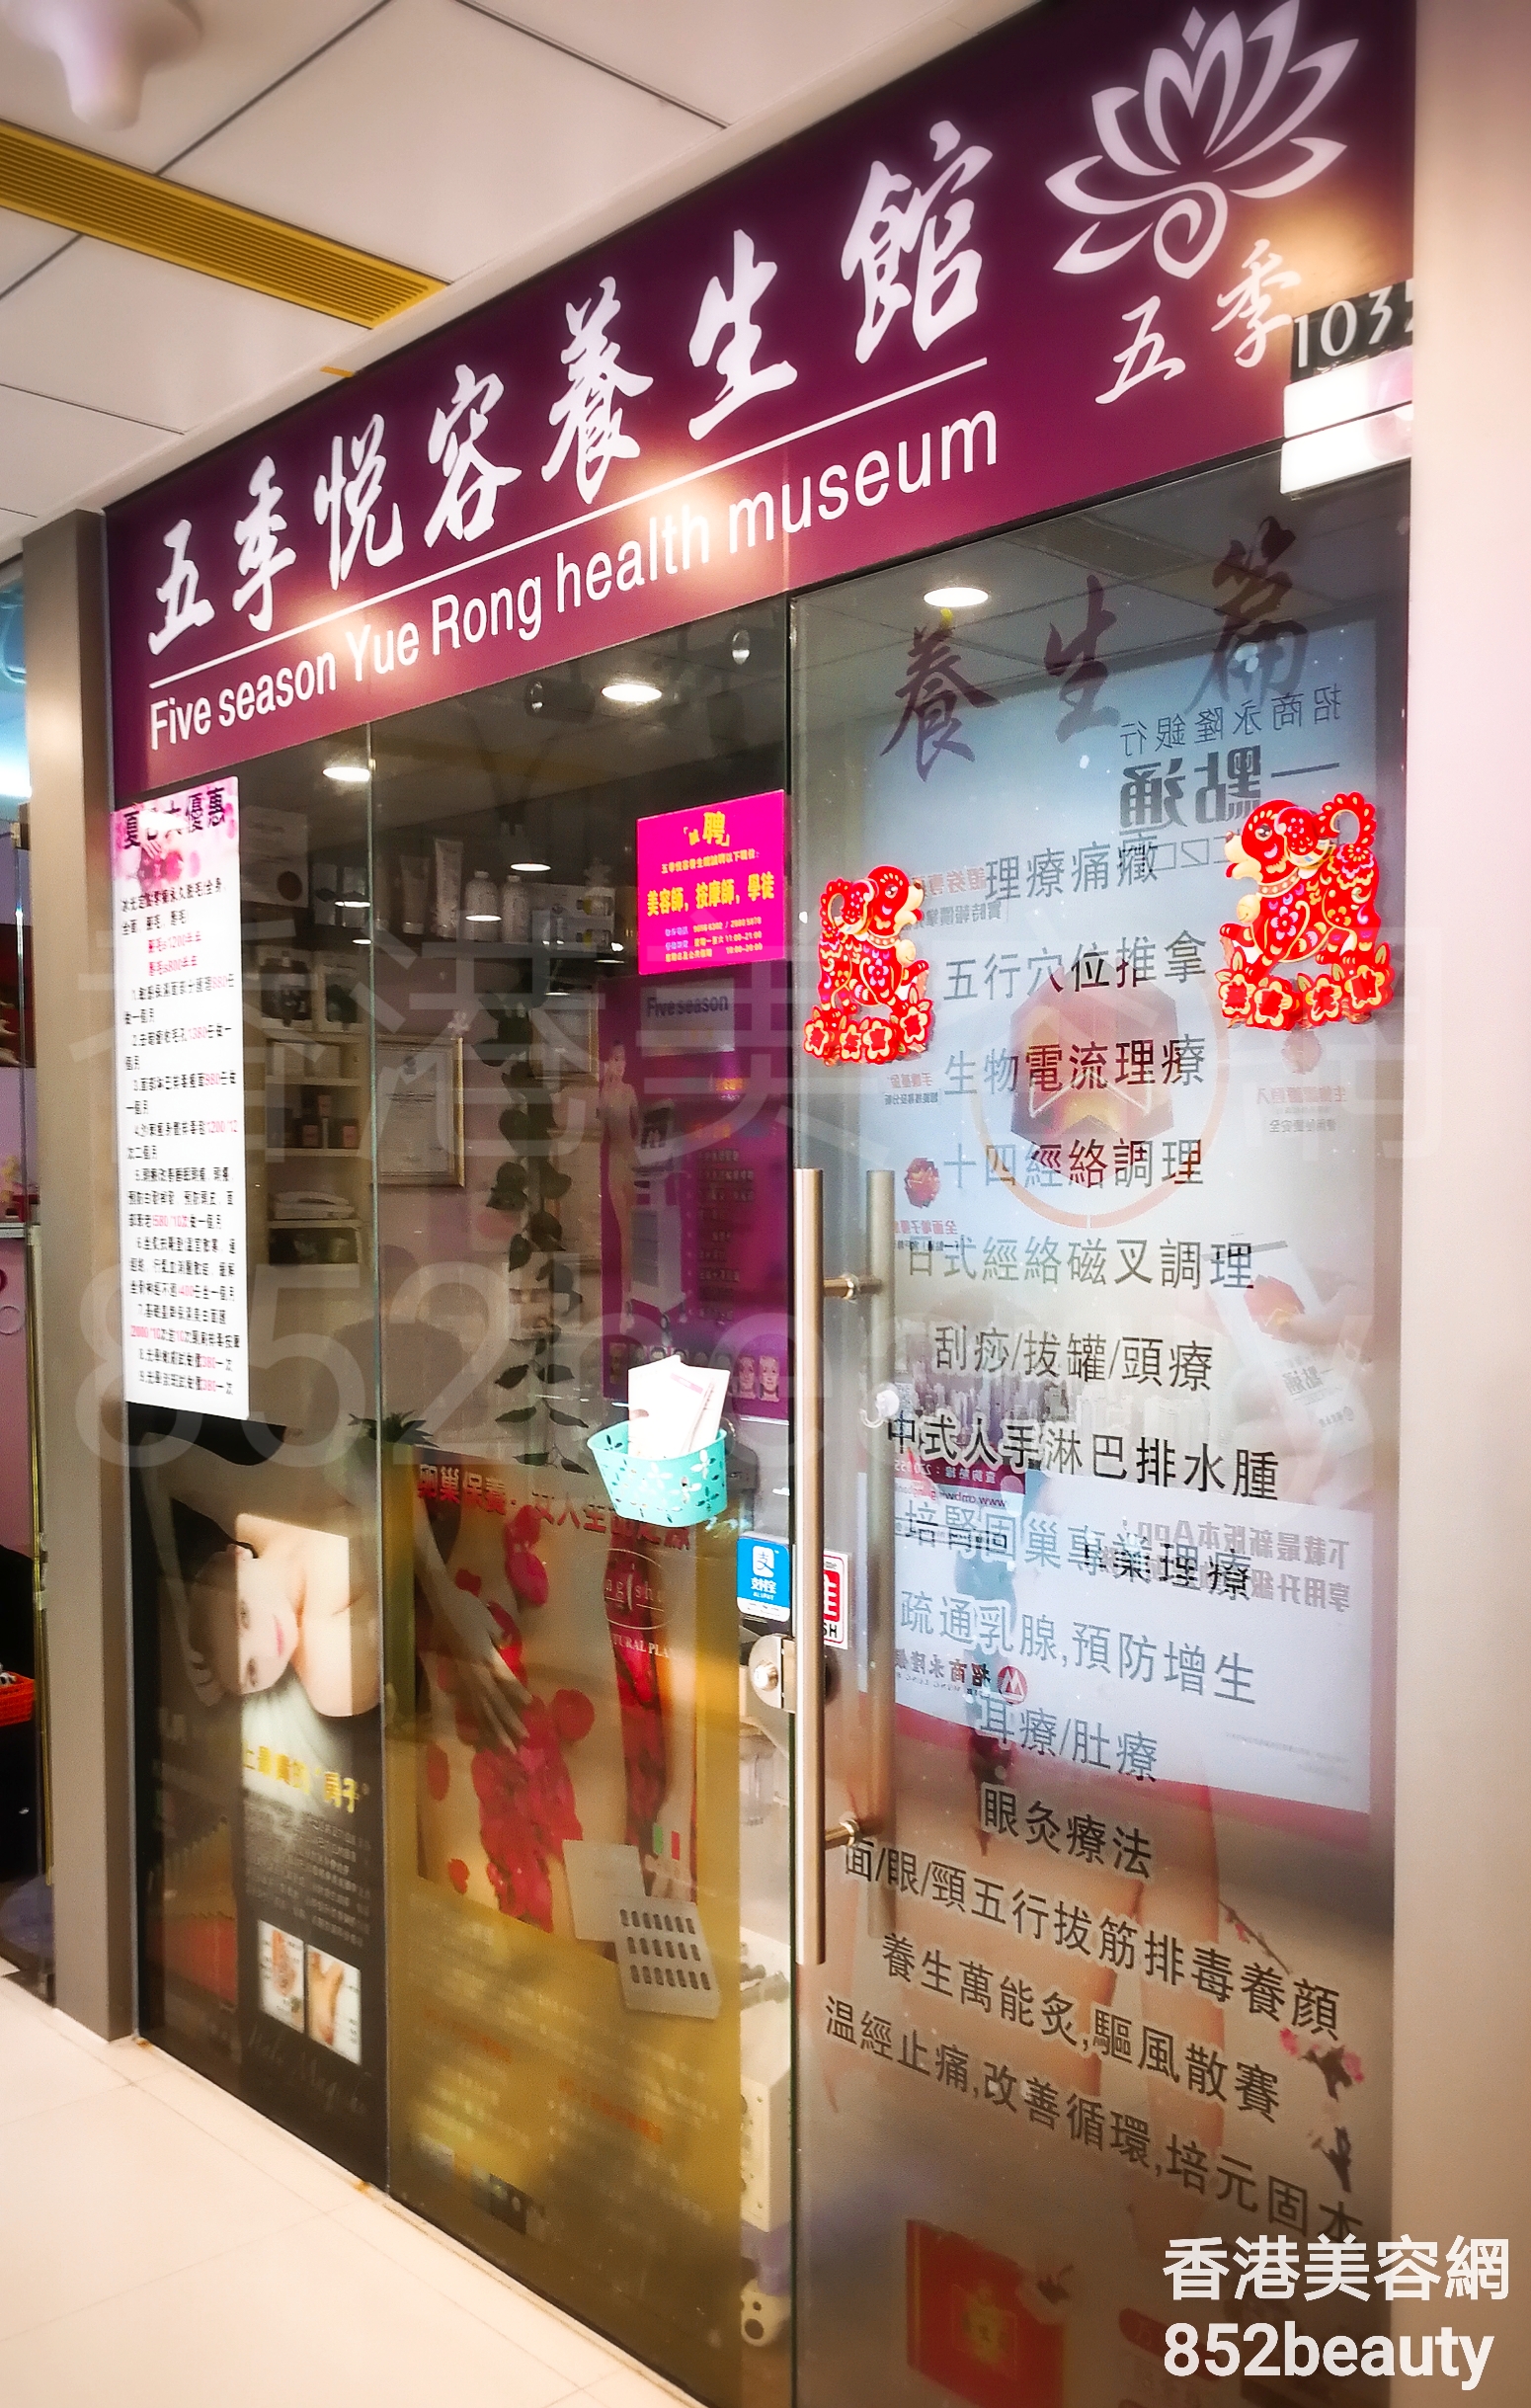 香港美容網 Hong Kong Beauty Salon 美容院 / 美容師: 五季悅容養生館